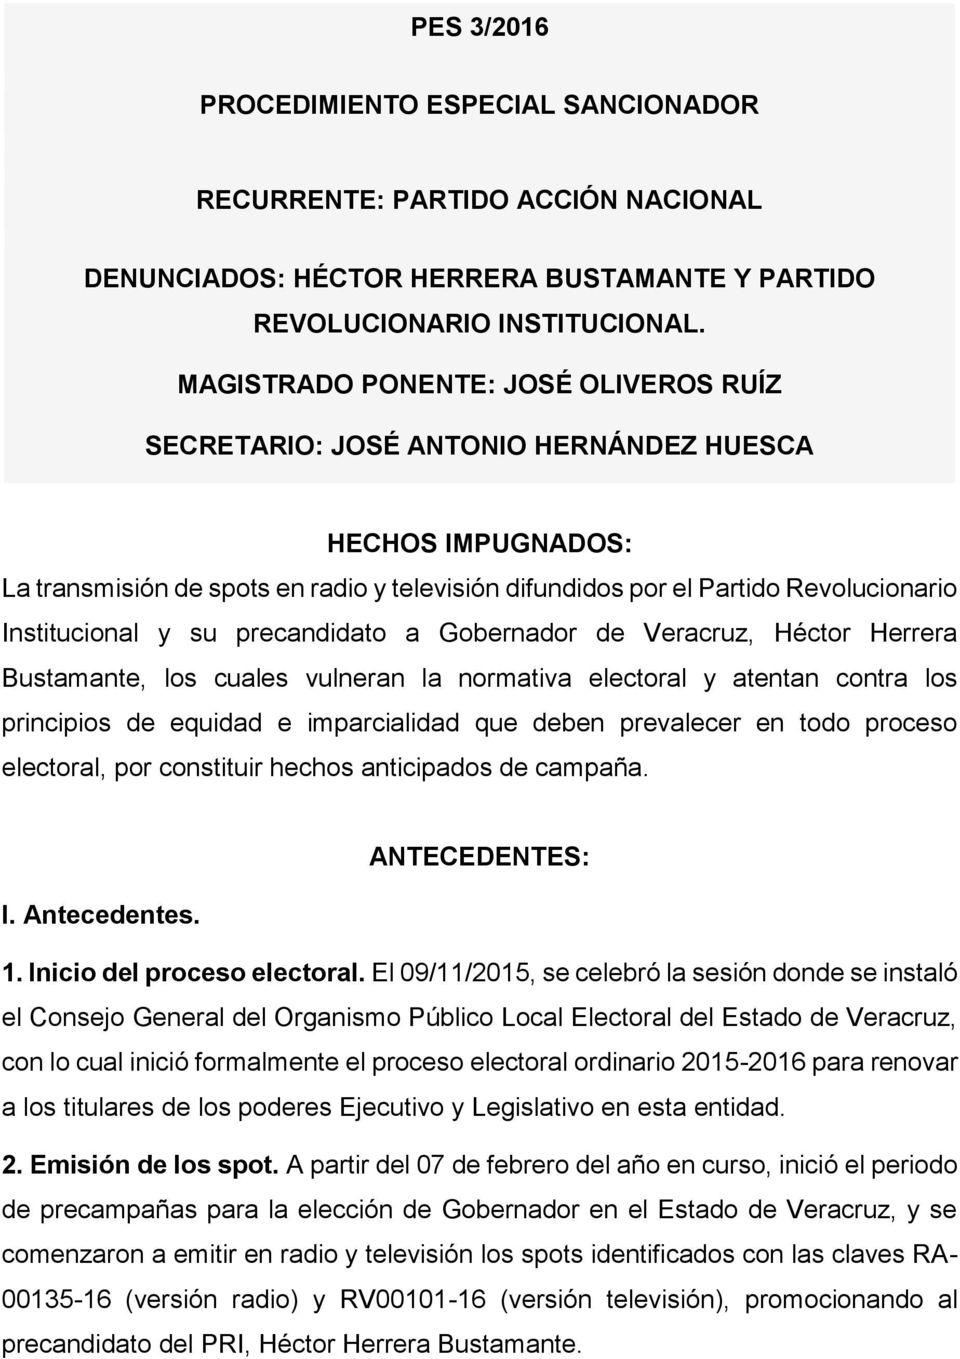 precandidato a Gobernador de Veracruz, Héctor Herrera Bustamante, los cuales vulneran la normativa electoral y atentan contra los principios de equidad e imparcialidad que deben prevalecer en todo